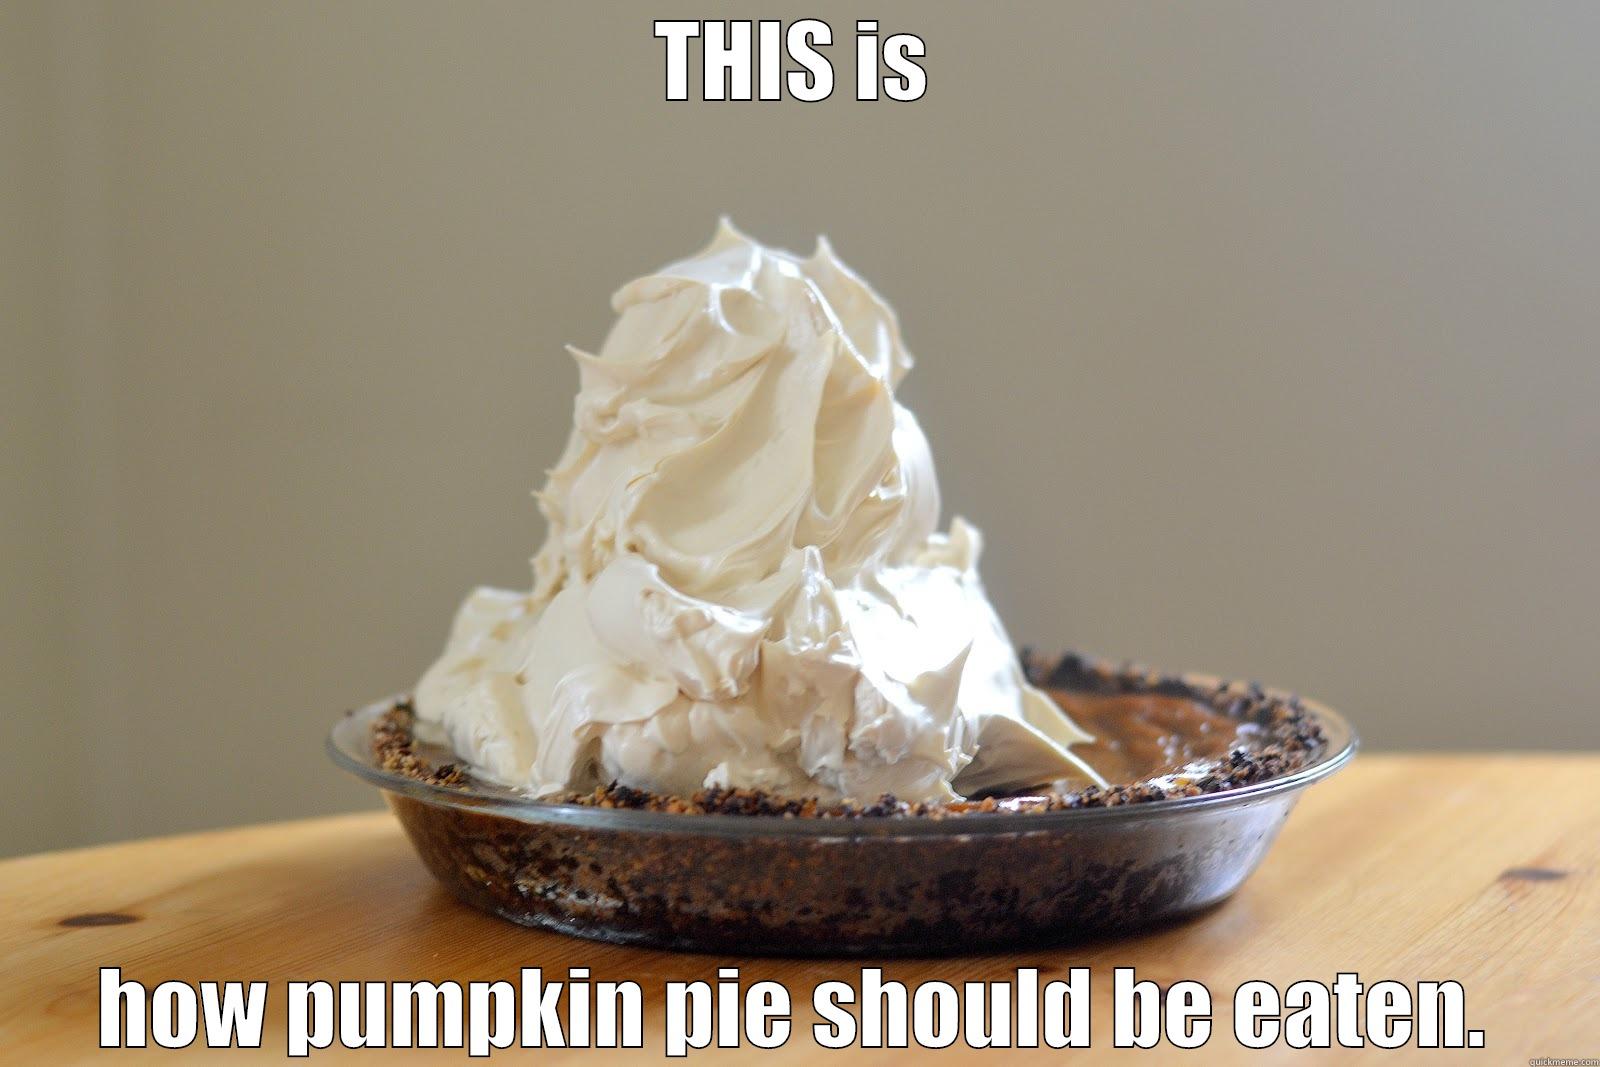 How to Eat Pumpkin Pie - THIS IS HOW PUMPKIN PIE SHOULD BE EATEN. Misc